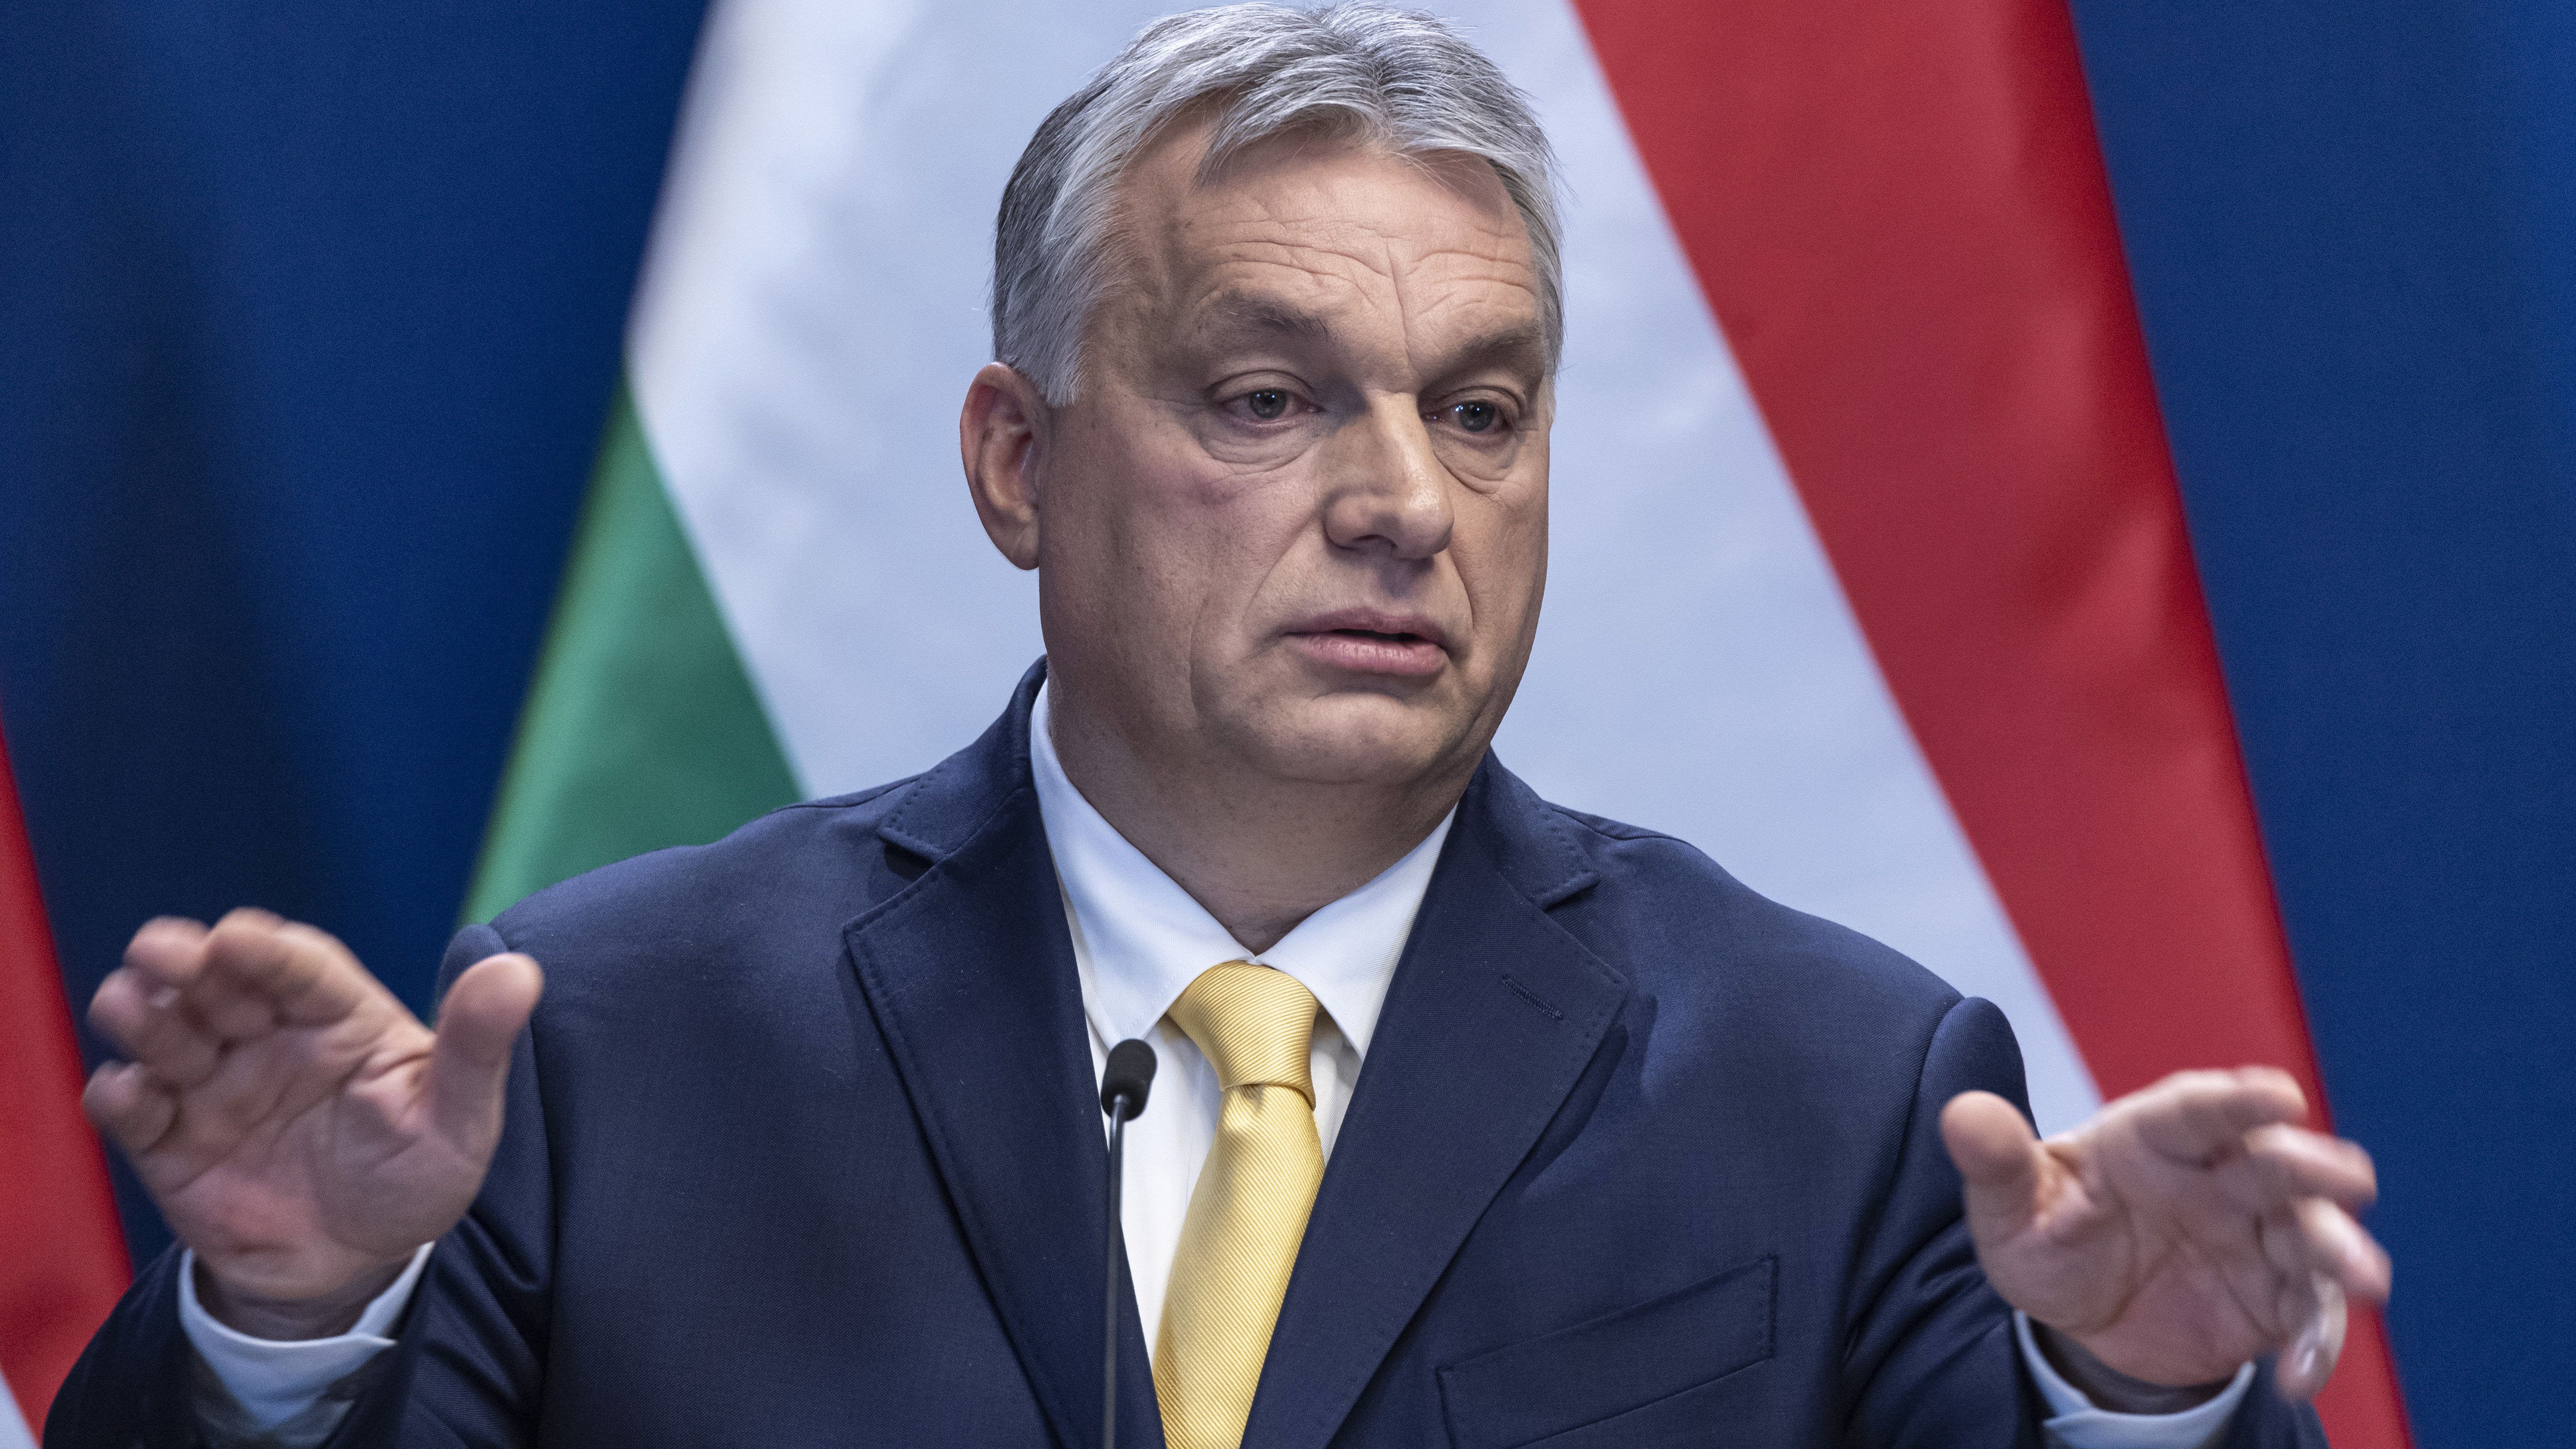 Párbeszéd: Orbán azonnal kérjen bocsánatot!